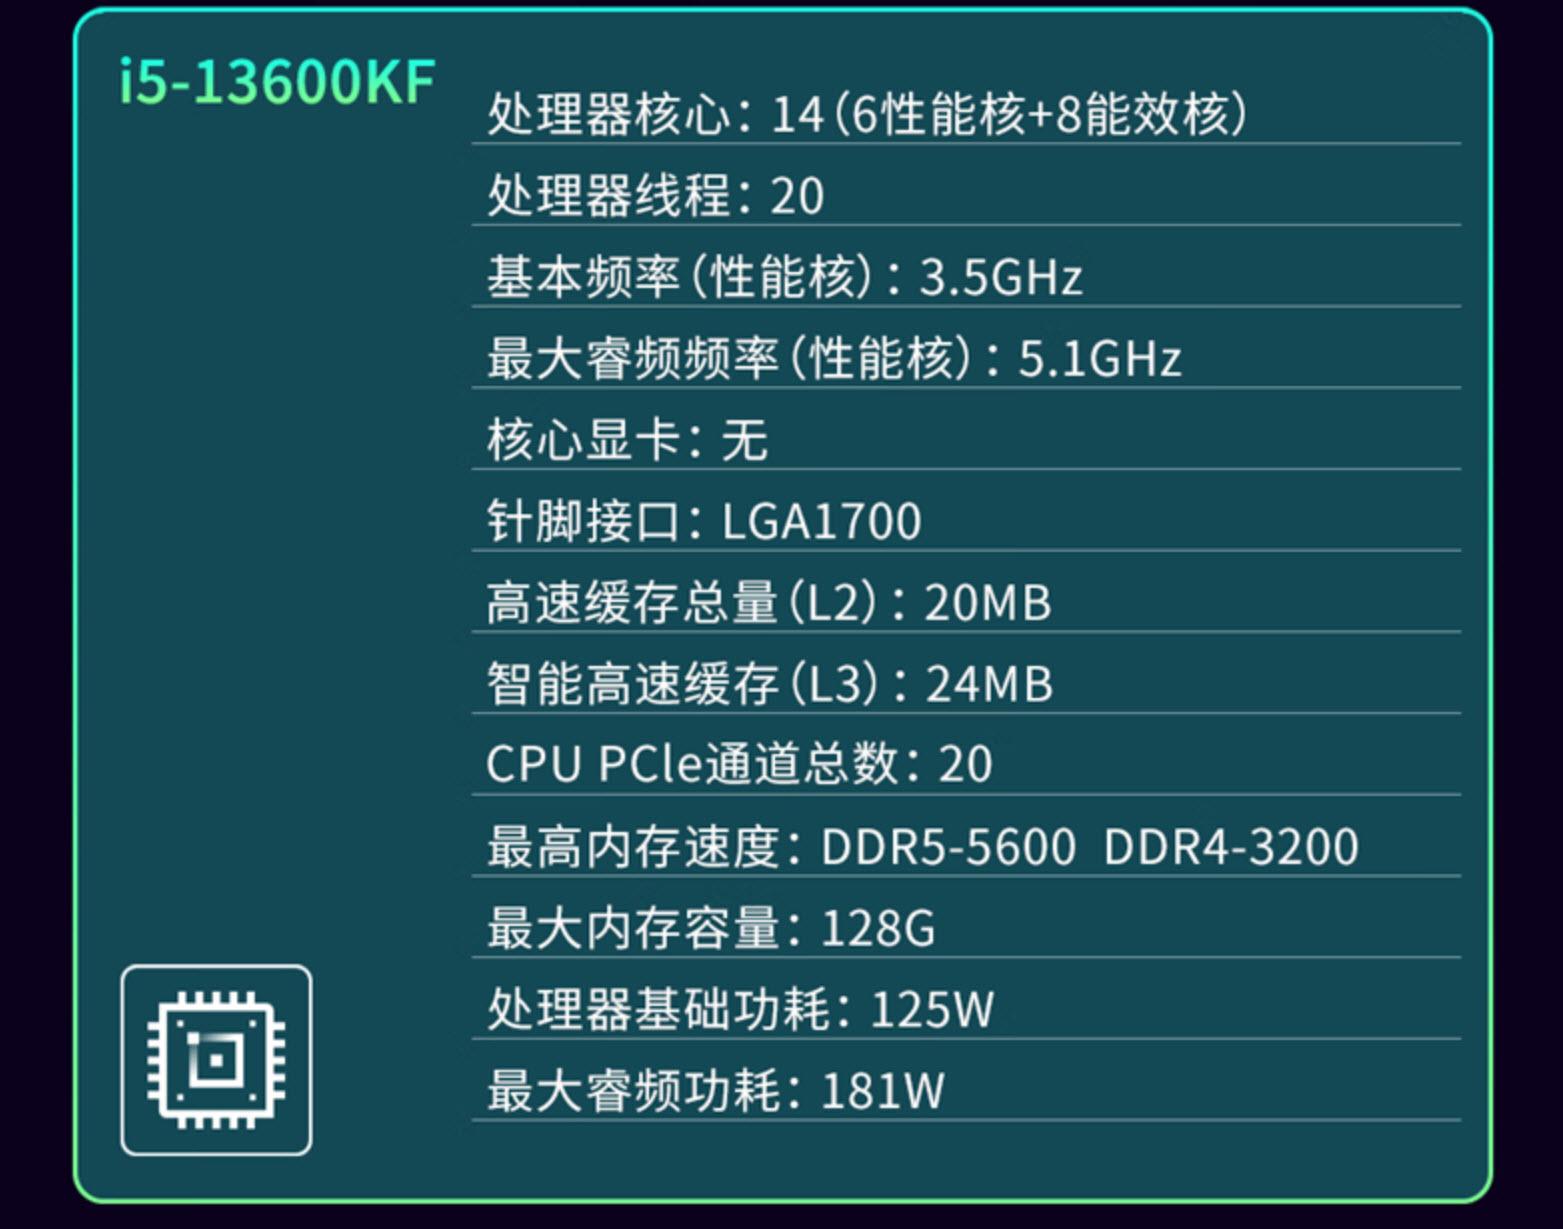 i7-3970X 英特尔i7-3970X处理器性能强劲，适用于视频剪辑、三维建模和游戏开发